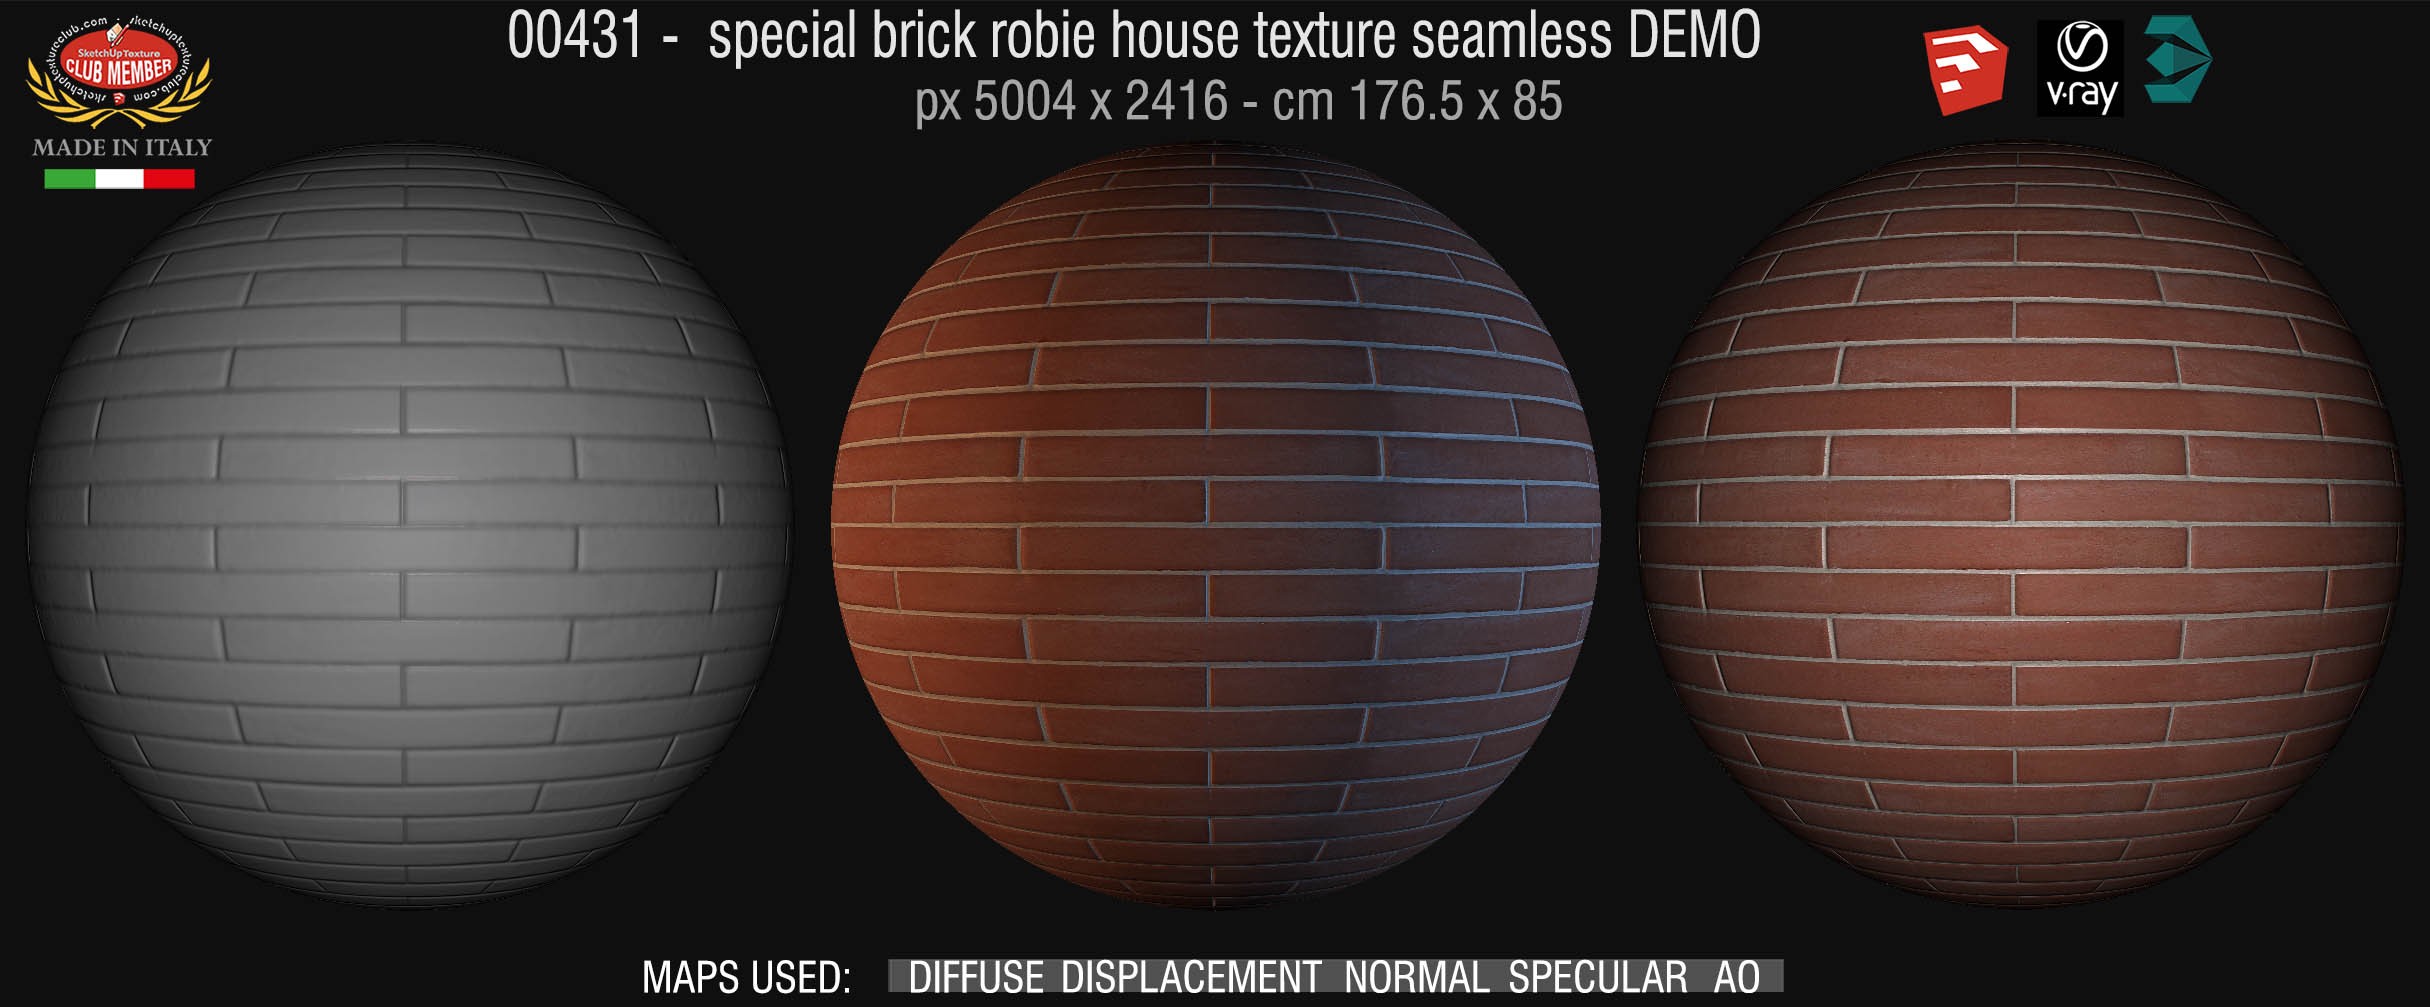 00431 special brick robie house texture seamless + maps DEMO